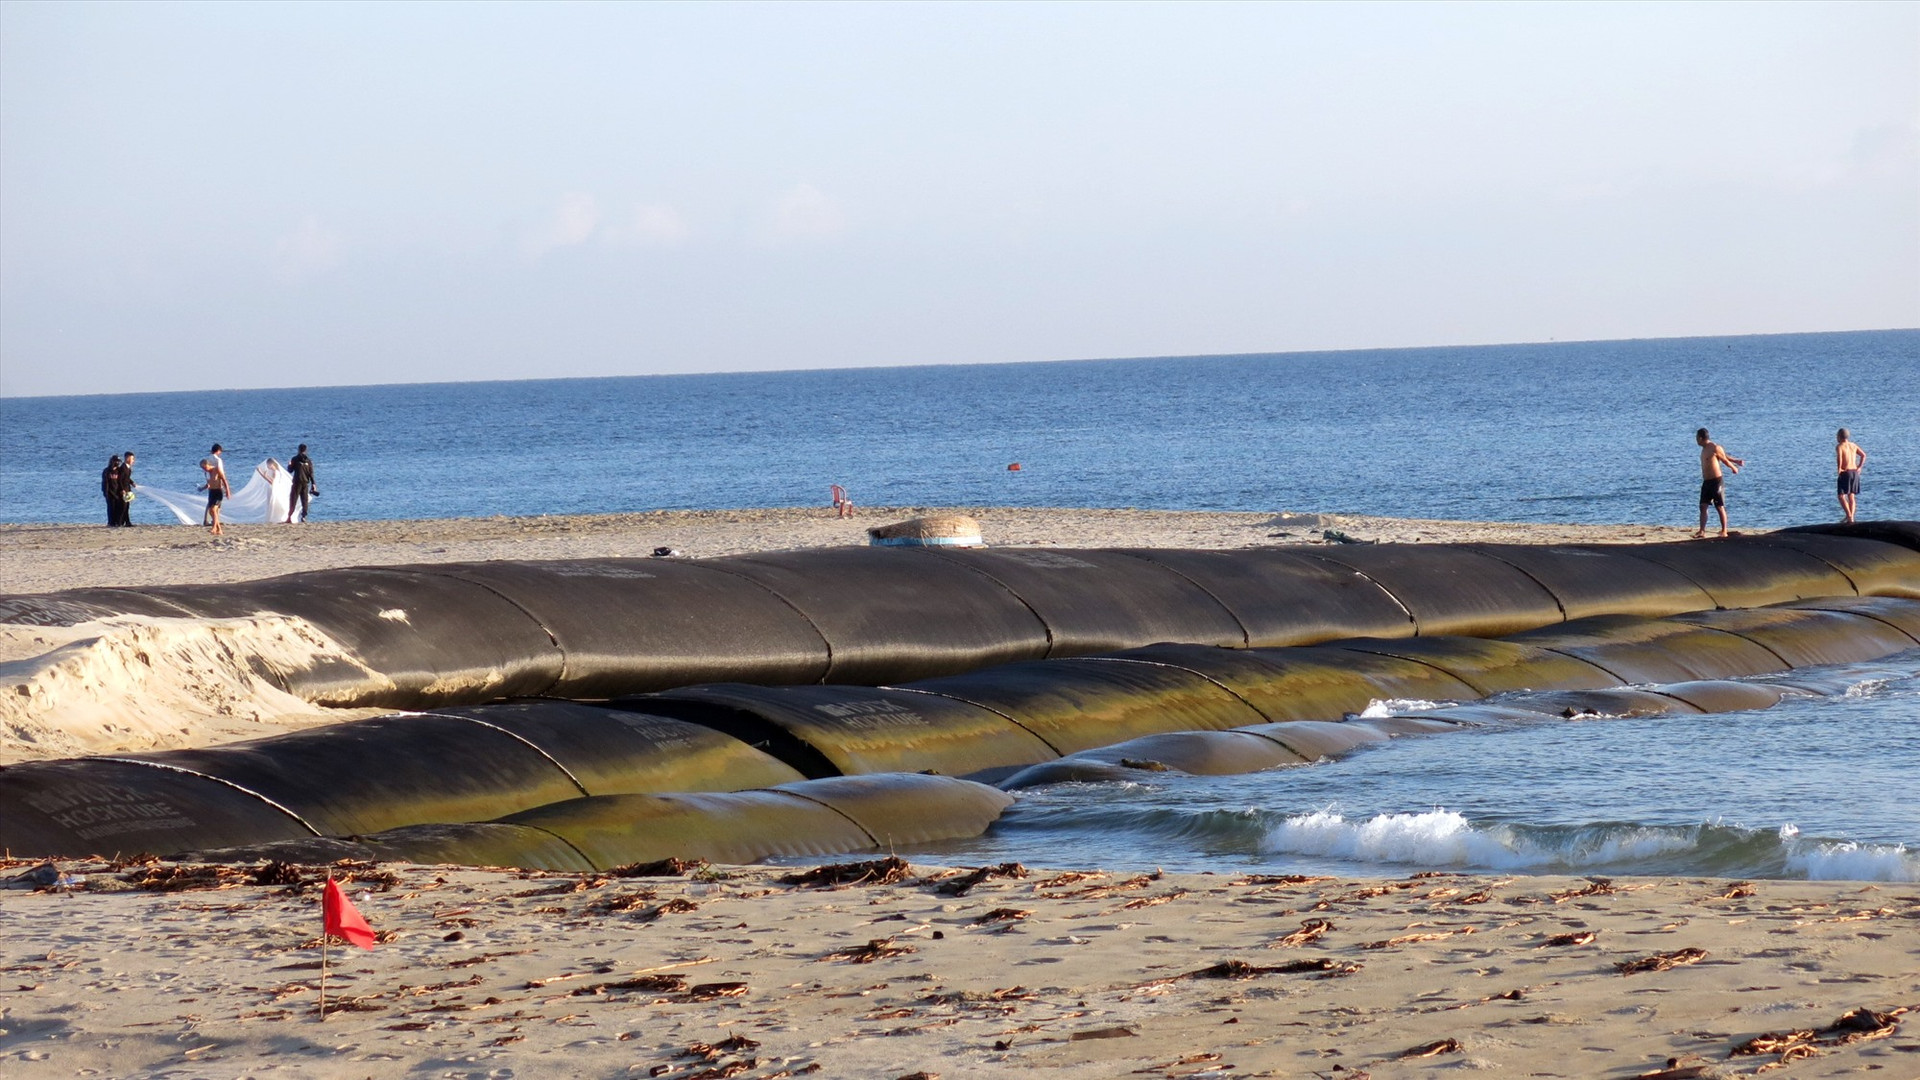 Trước tình trạng sạt lở bờ biển Hội An, đang có một dự án Chống xói lở và bảo vệ bền vững bờ biển Hội An từ vốn ODA chuẩn bị đầu tư. Ảnh: T.D